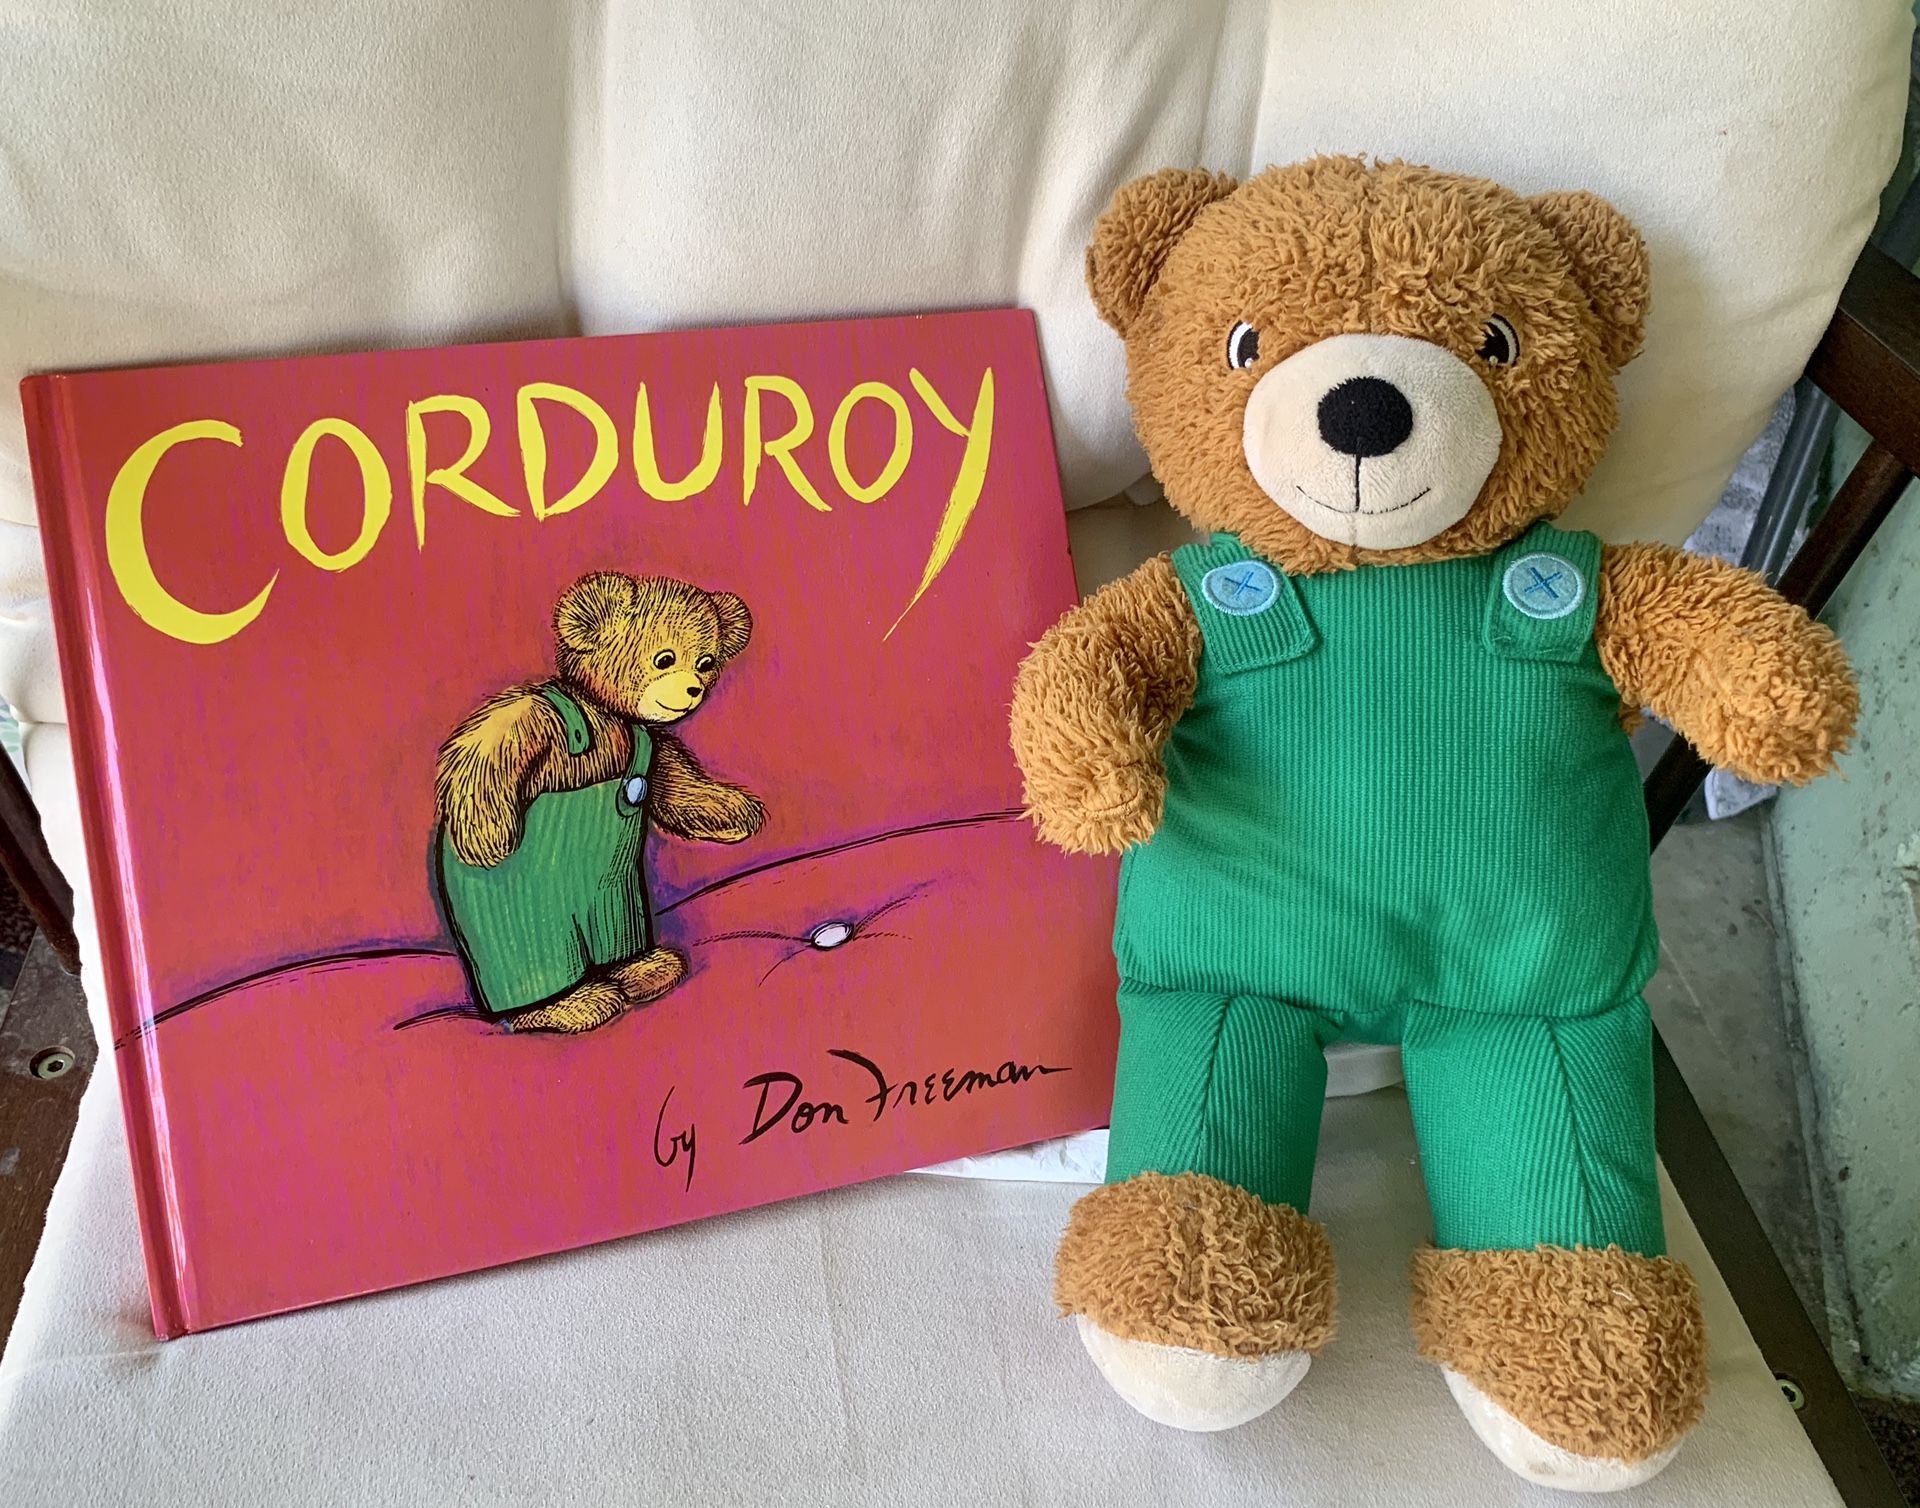 Corduroy book & stuffed animal set